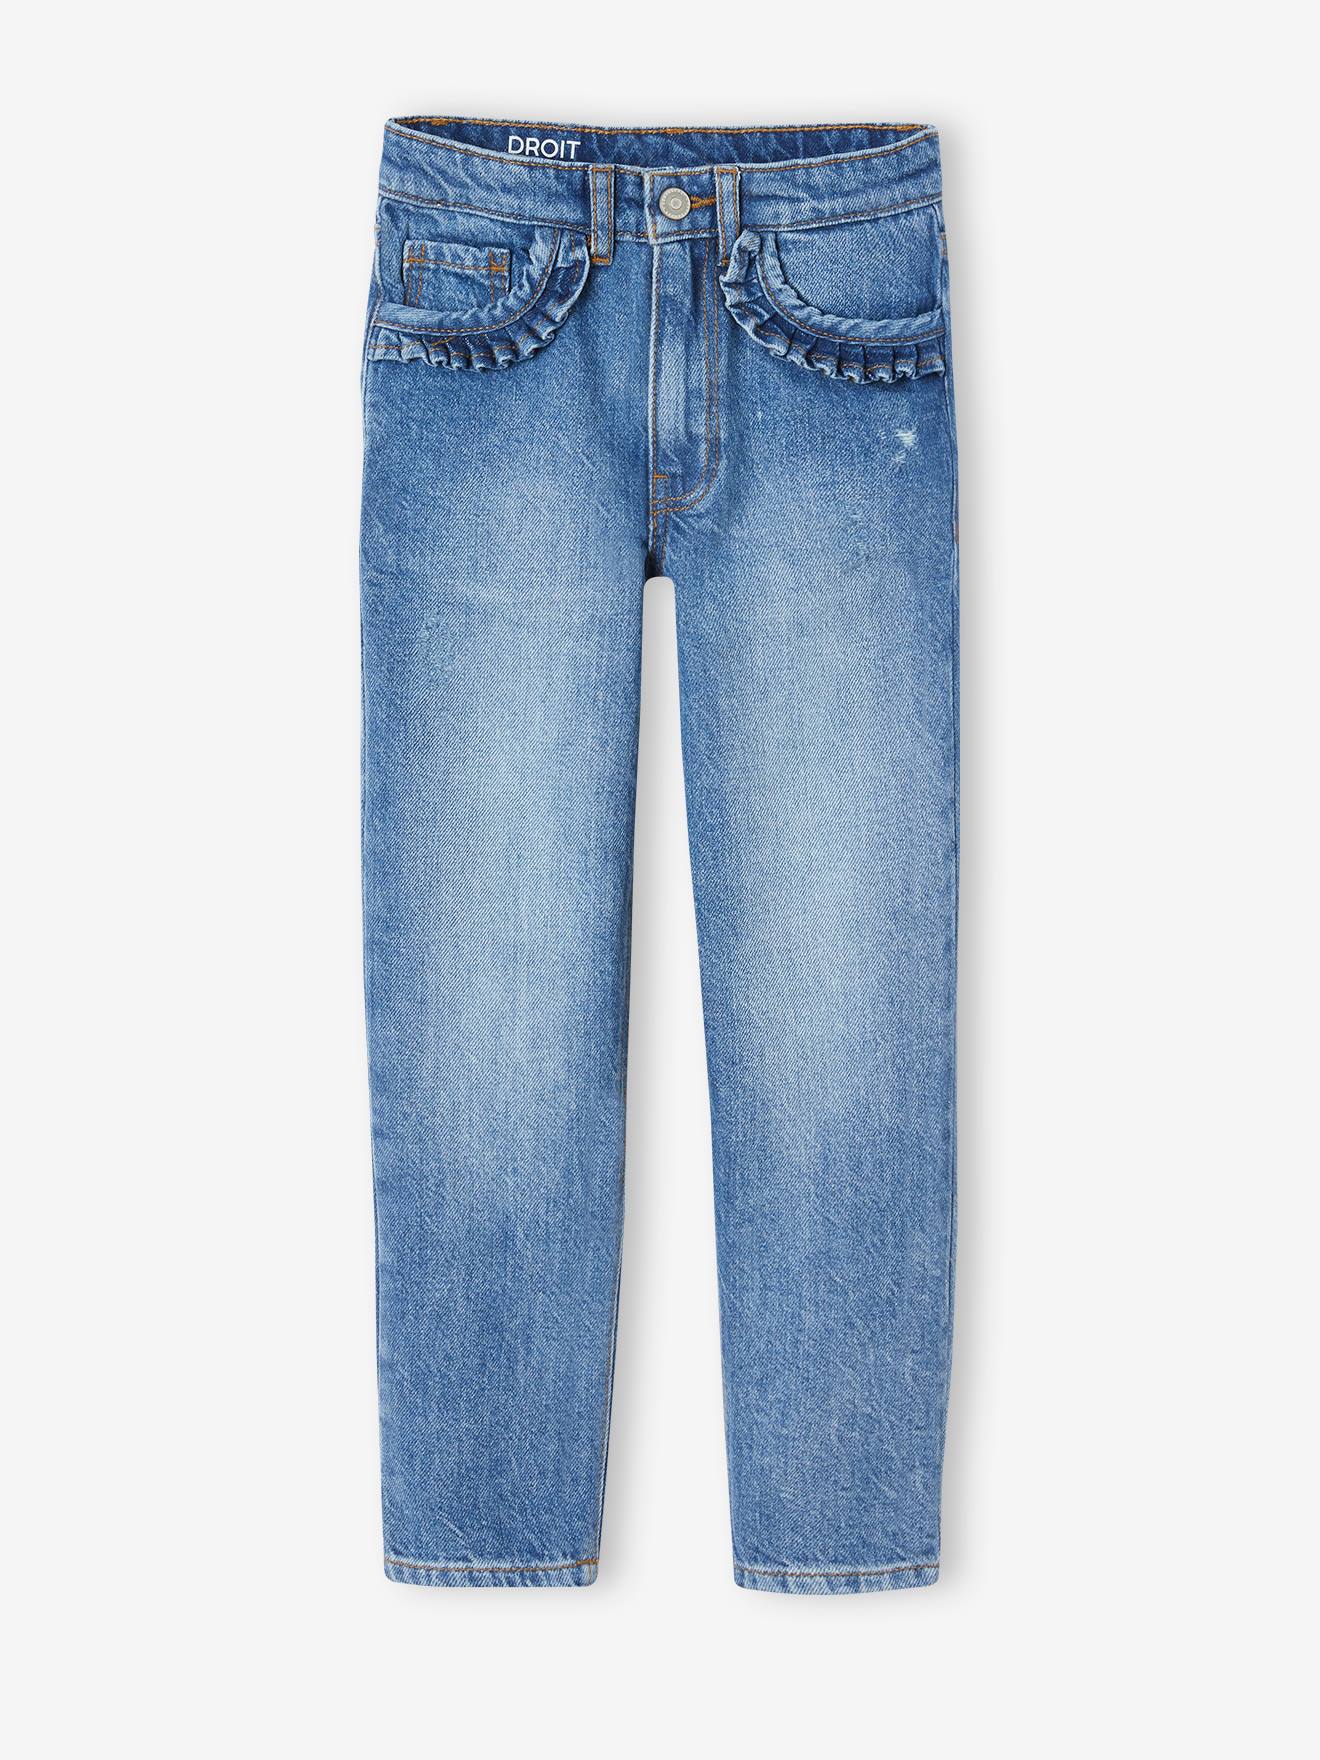 NARROW Hip, Straight Leg MorphologiK Jeans for Girls stone